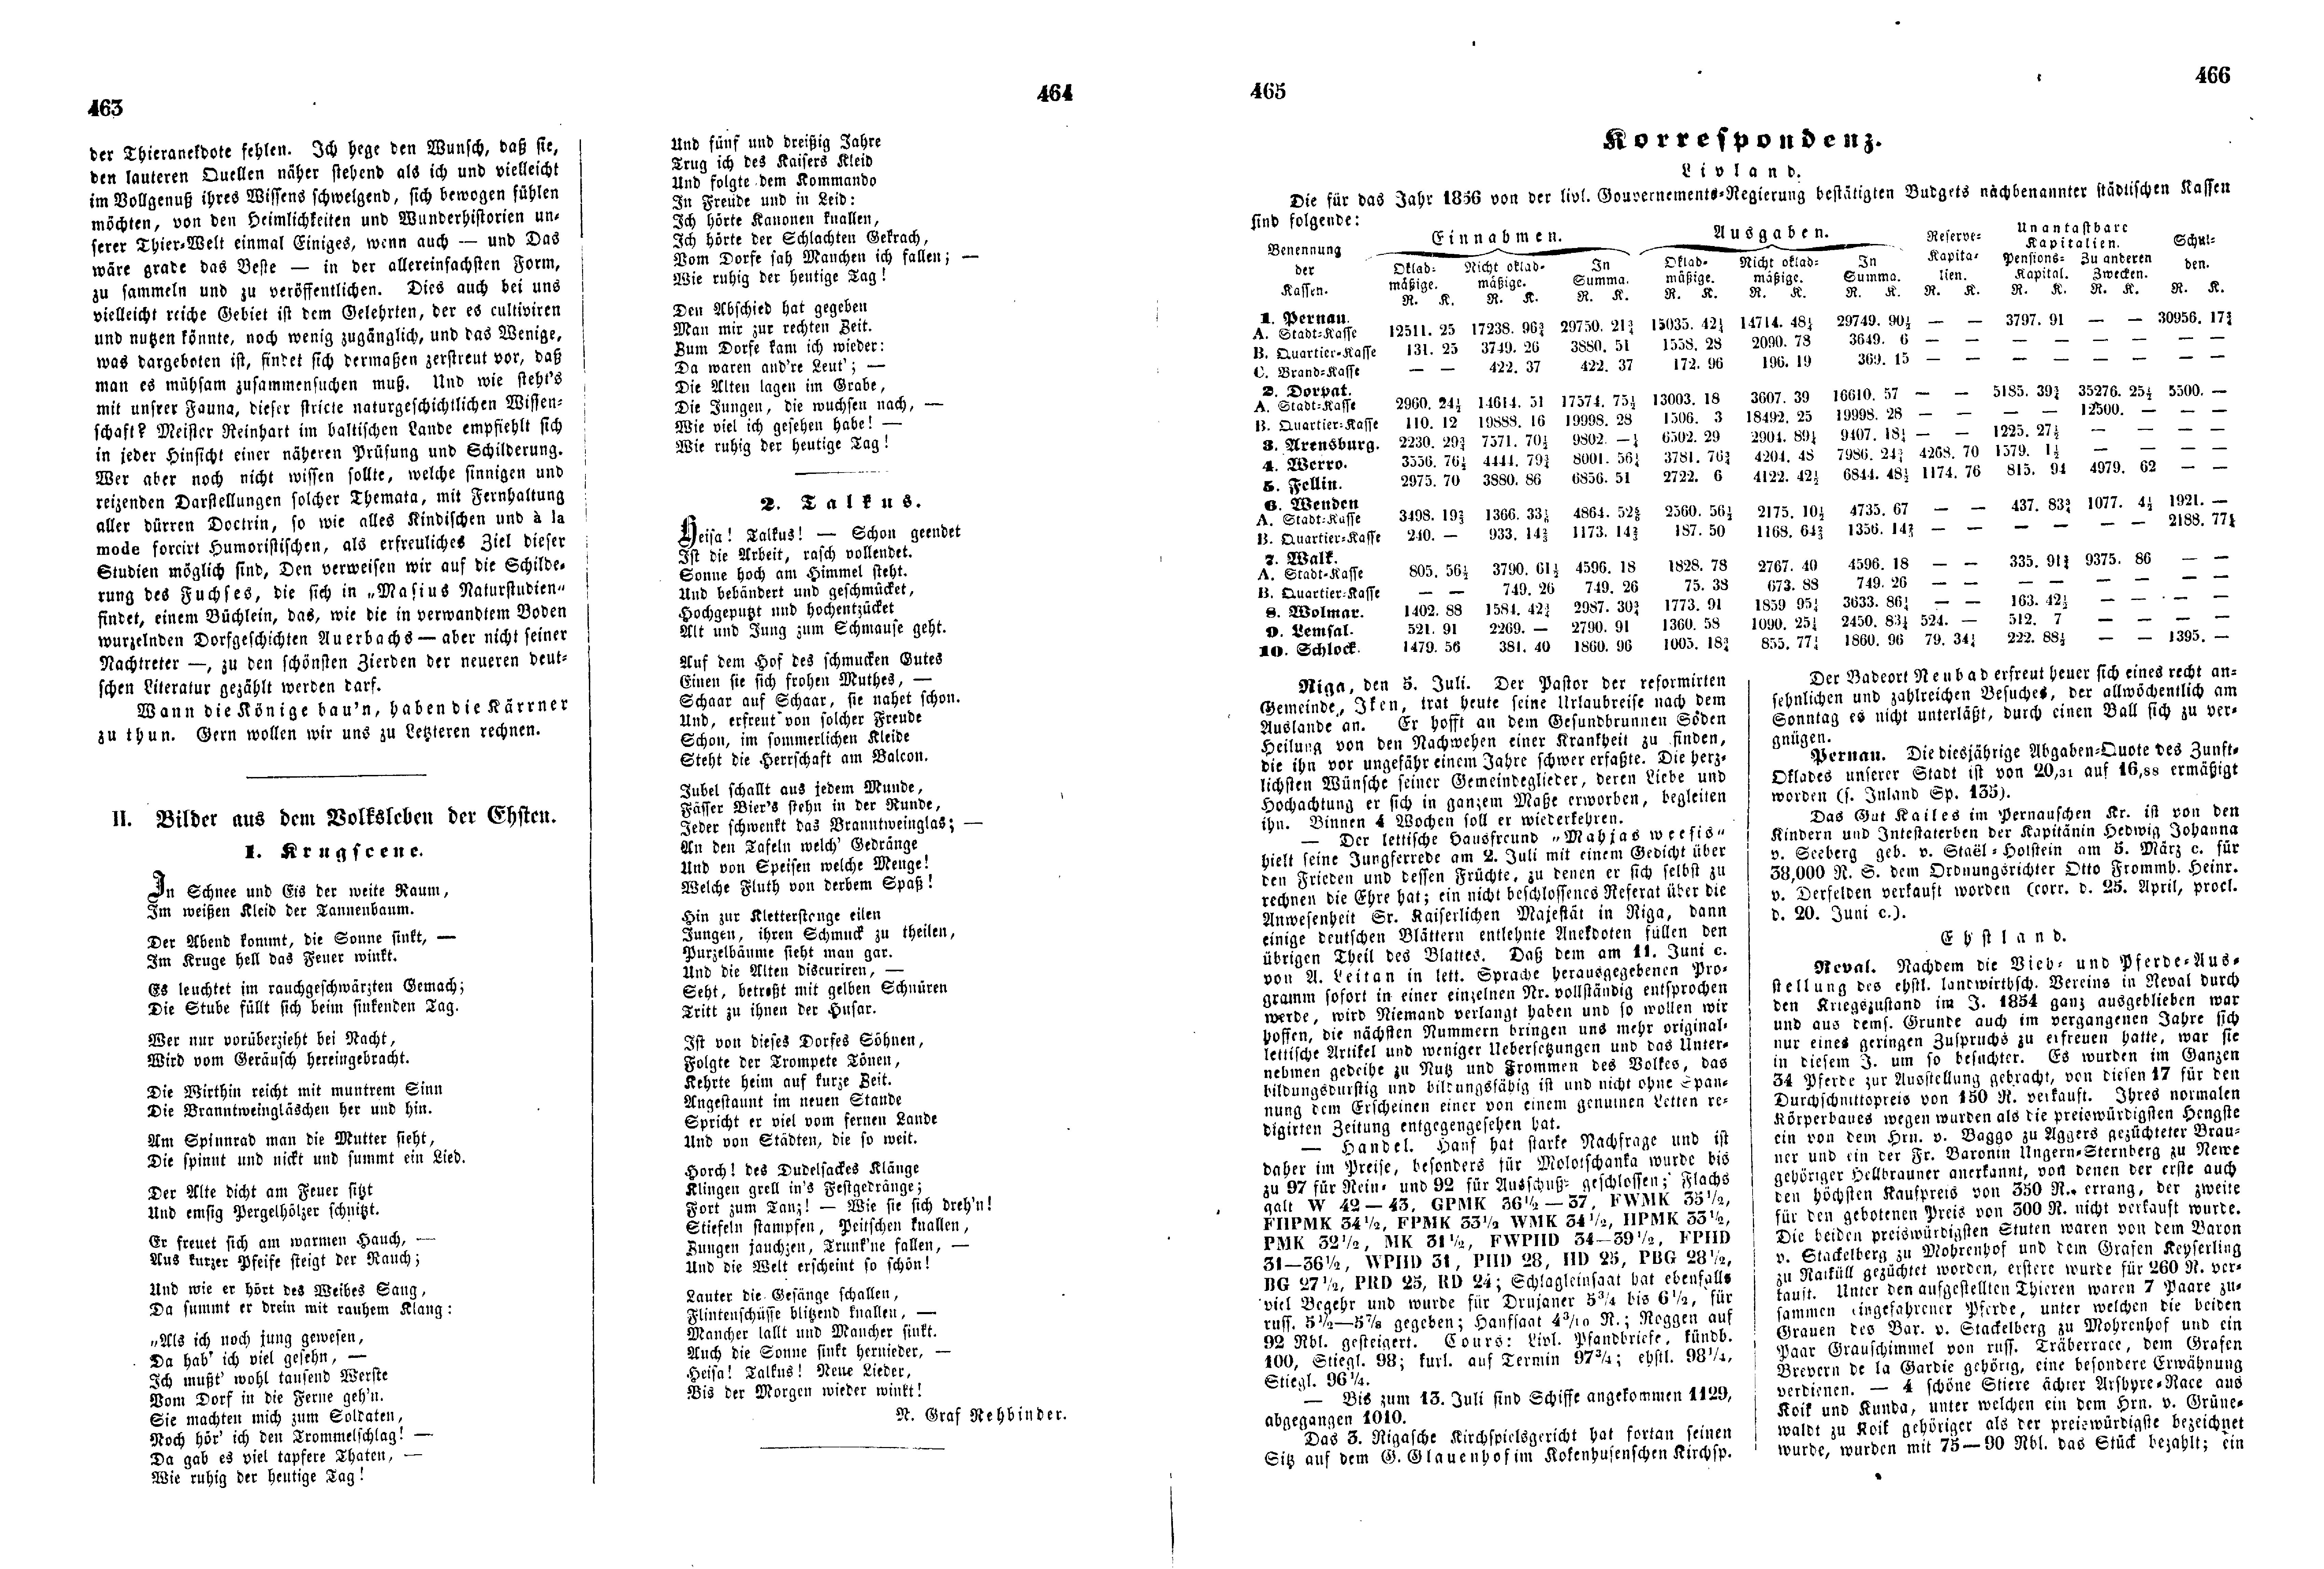 Das Inland [21] (1856) | 125. (463-466) Põhitekst